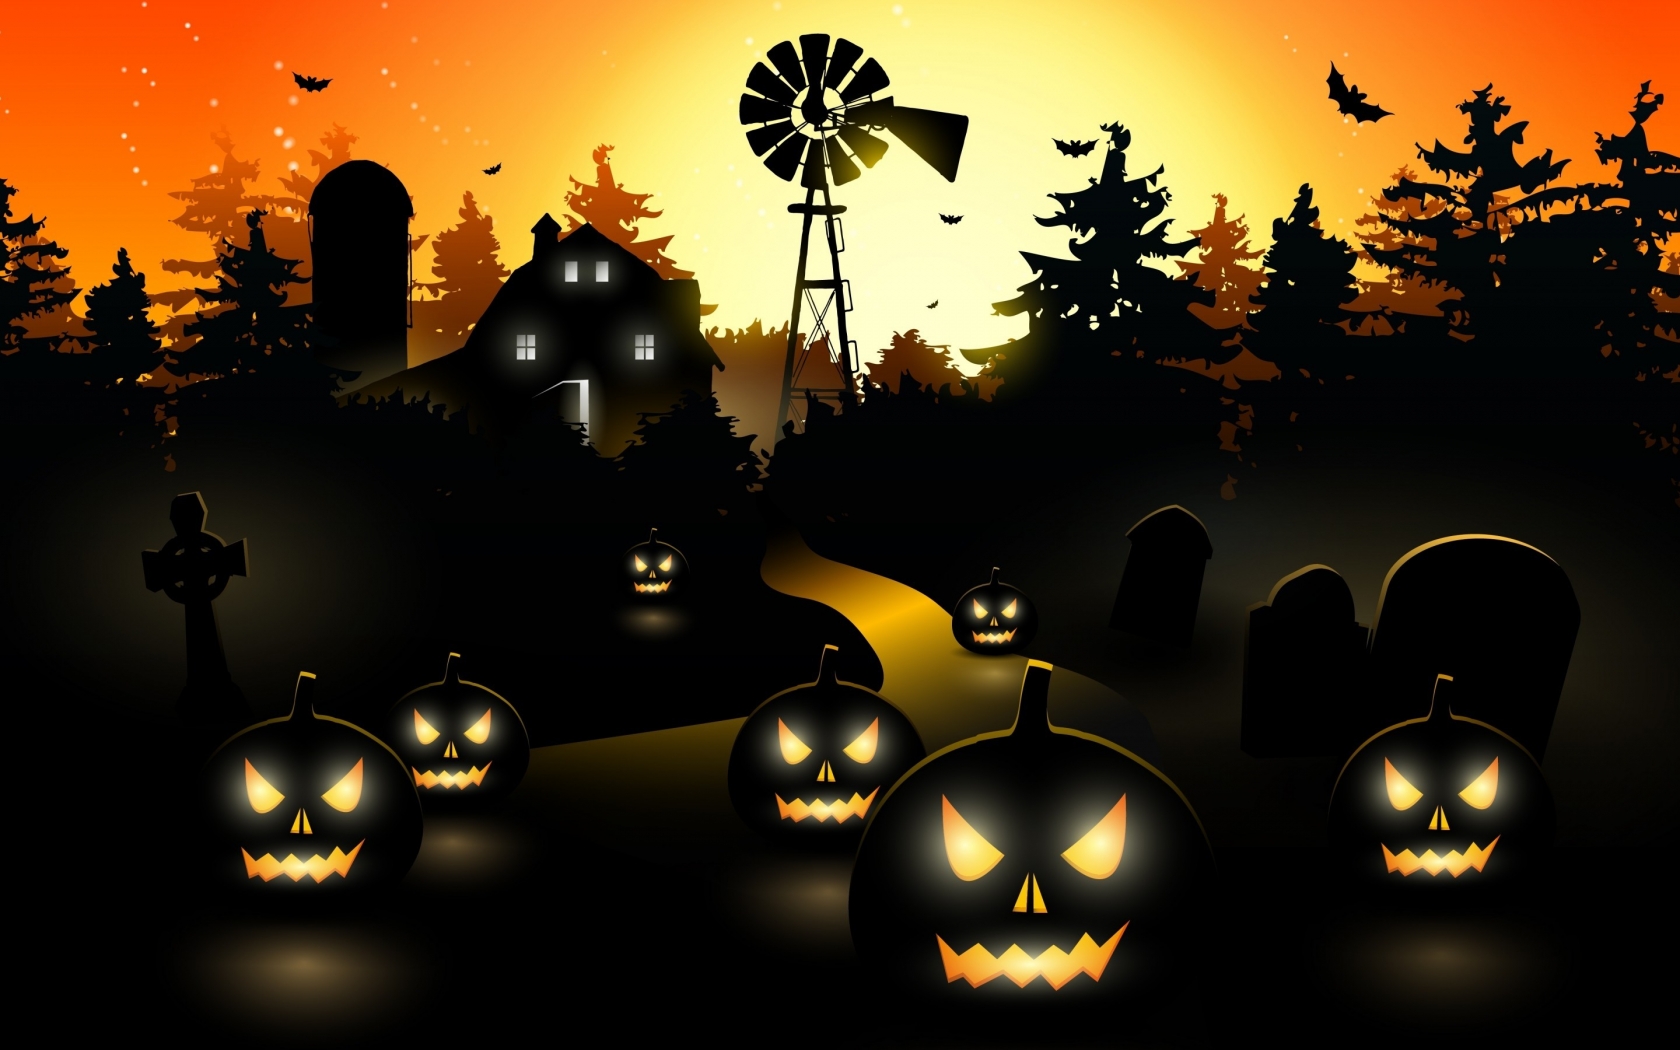 Halloween Black Pumpkins for 1680 x 1050 widescreen resolution